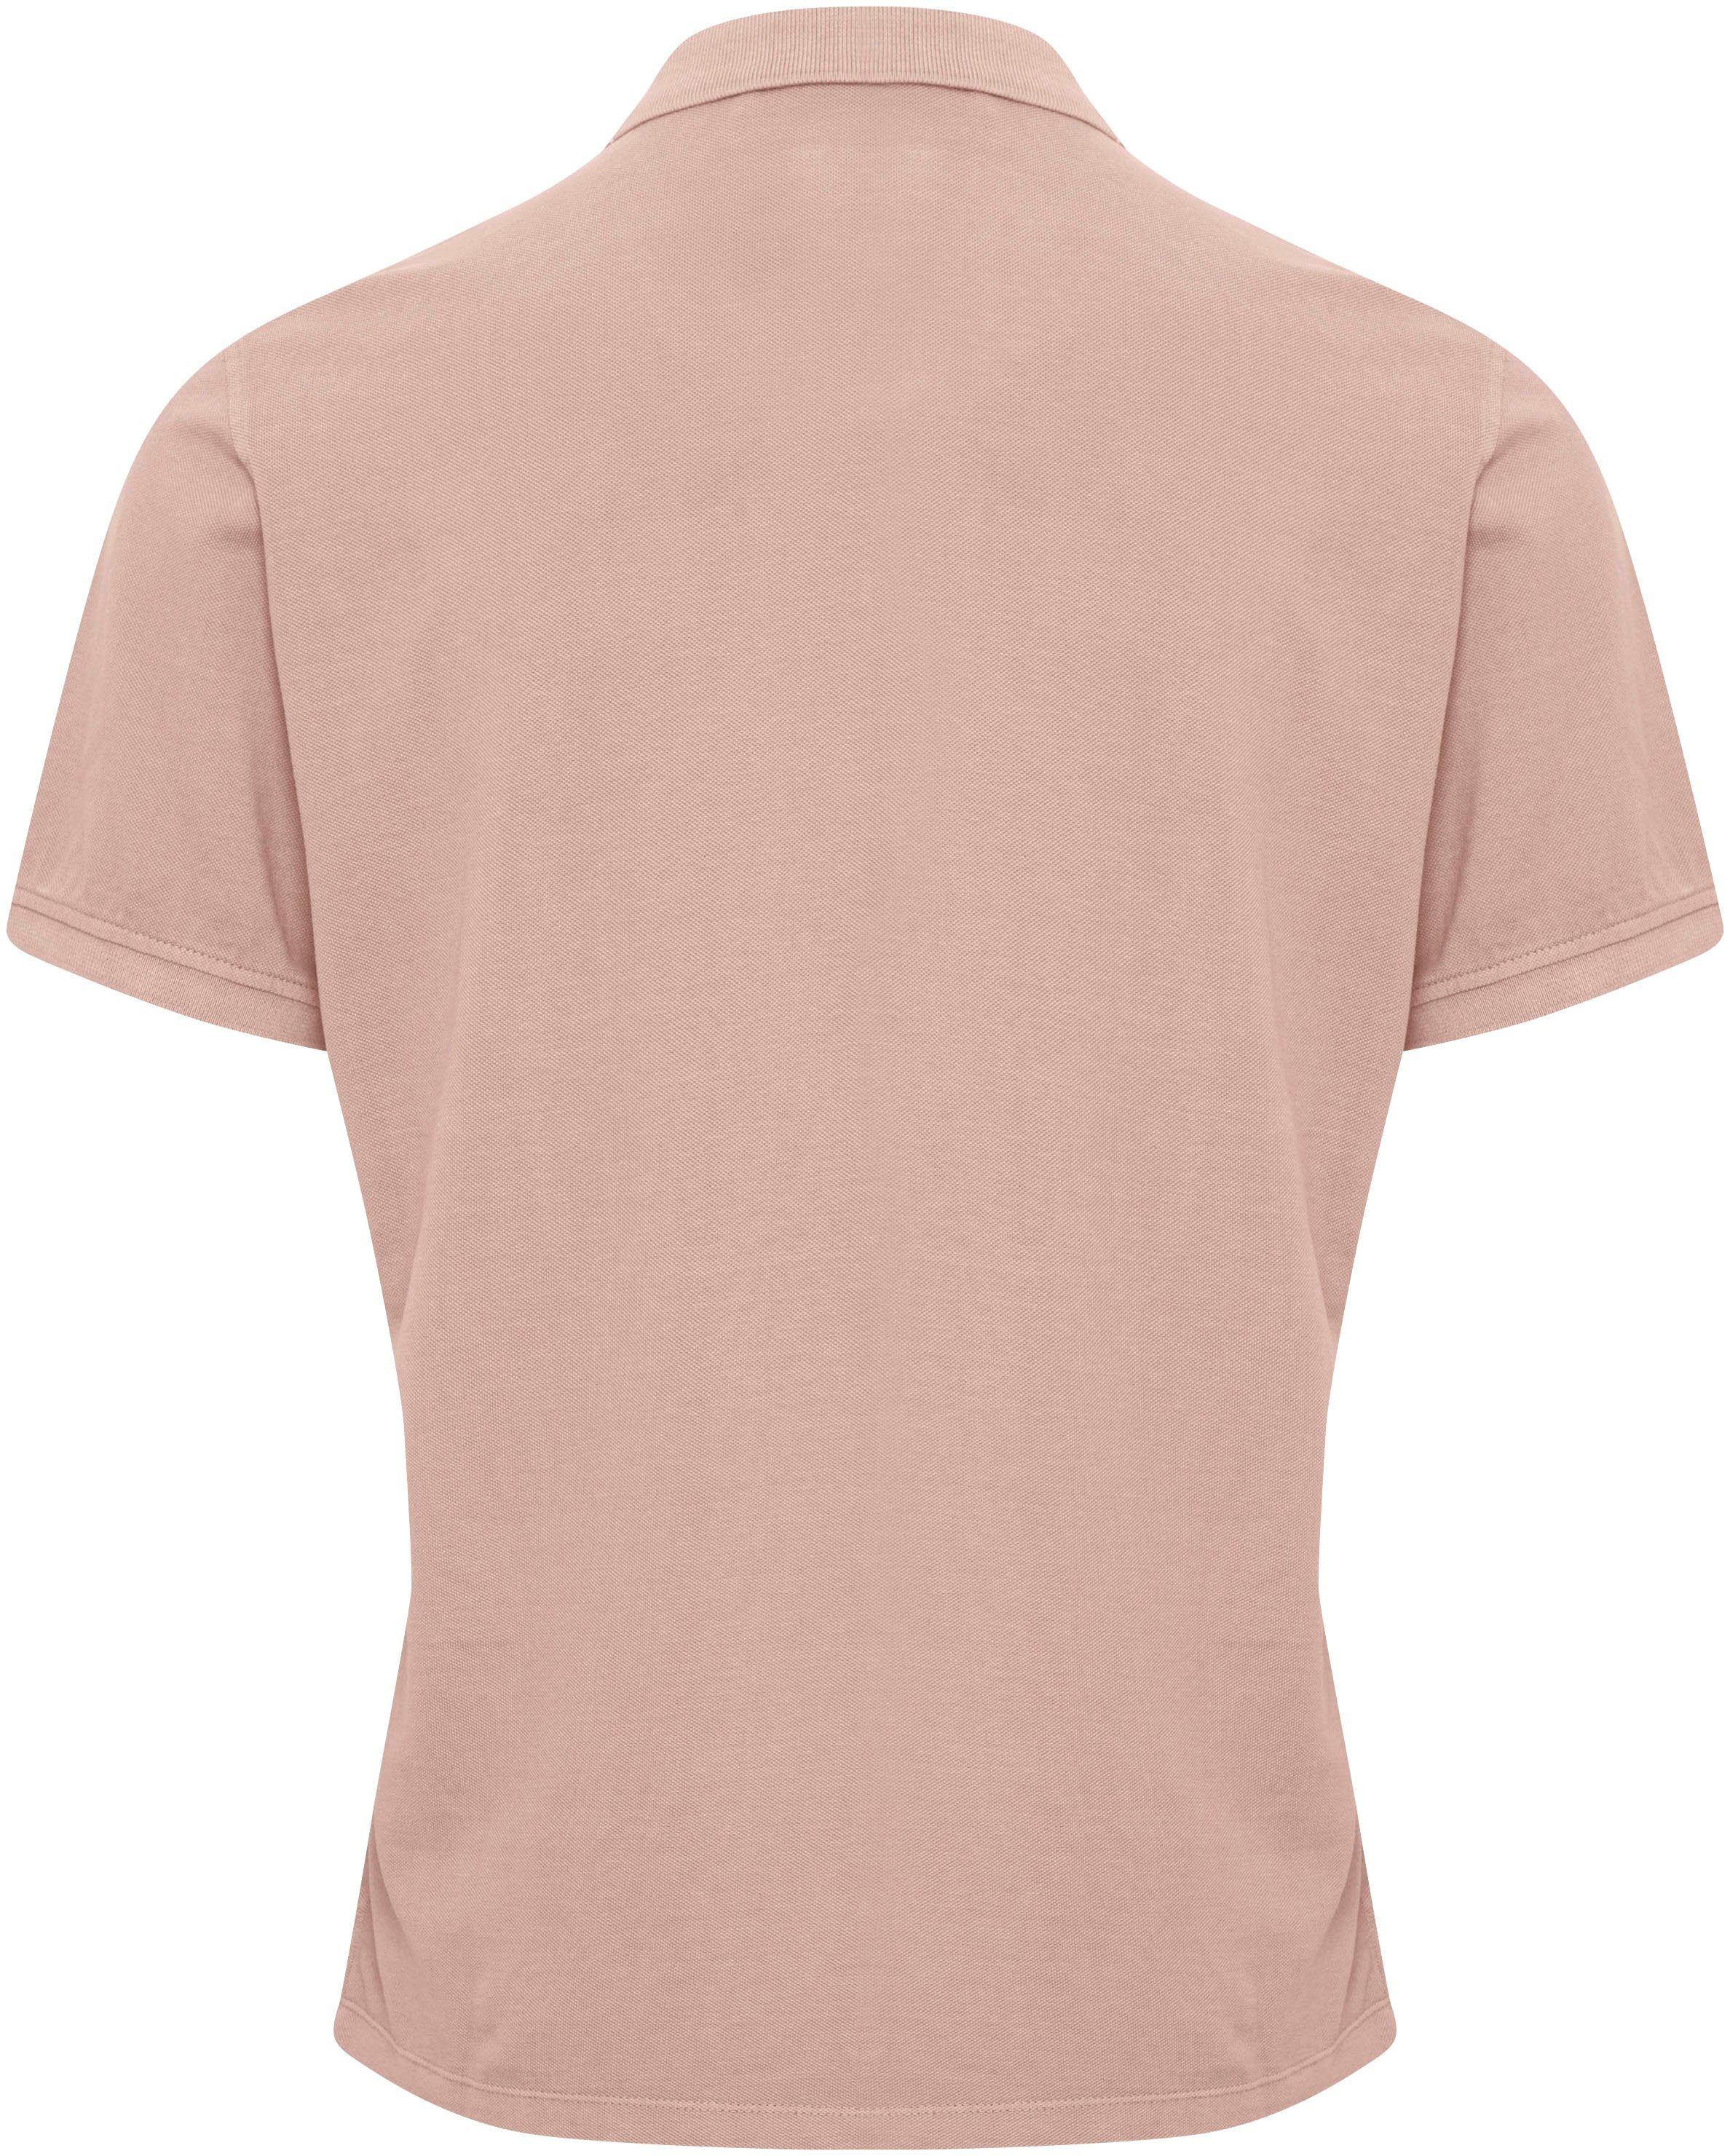 Blend BL-Poloshirt pink Poloshirt